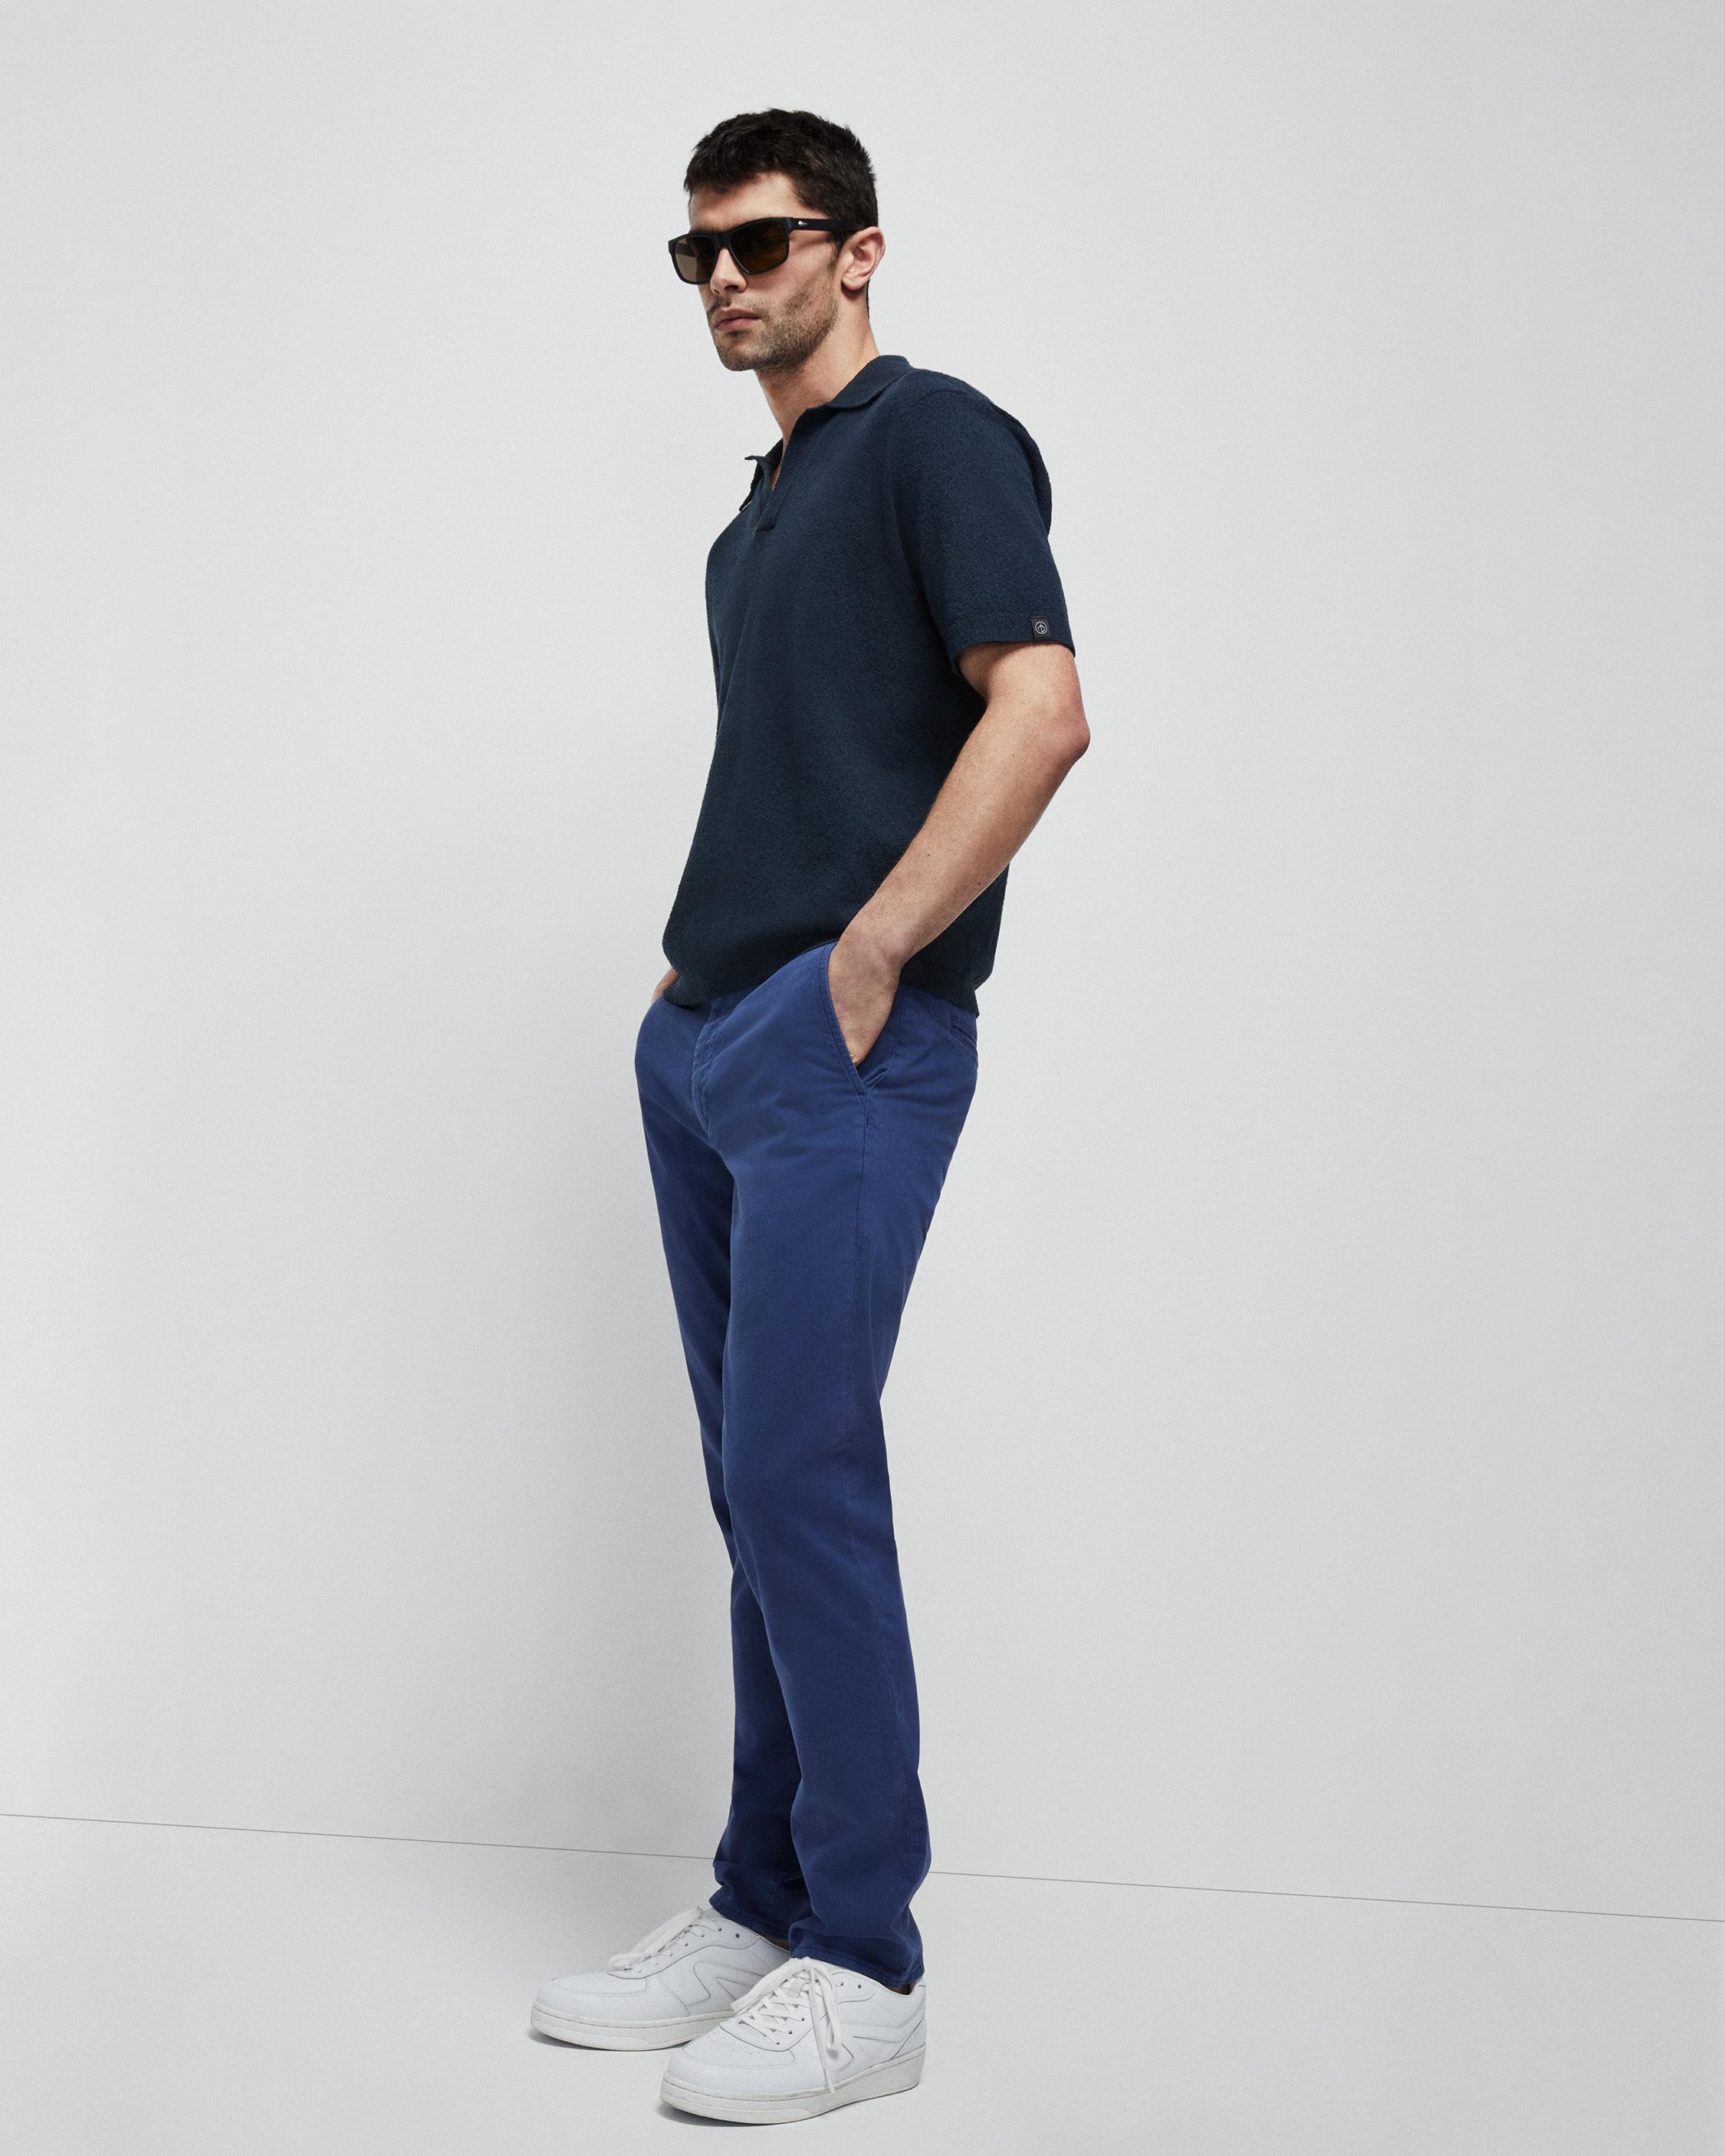 Chinos Pants for Men with Expert Craftsmanship | rag & bone